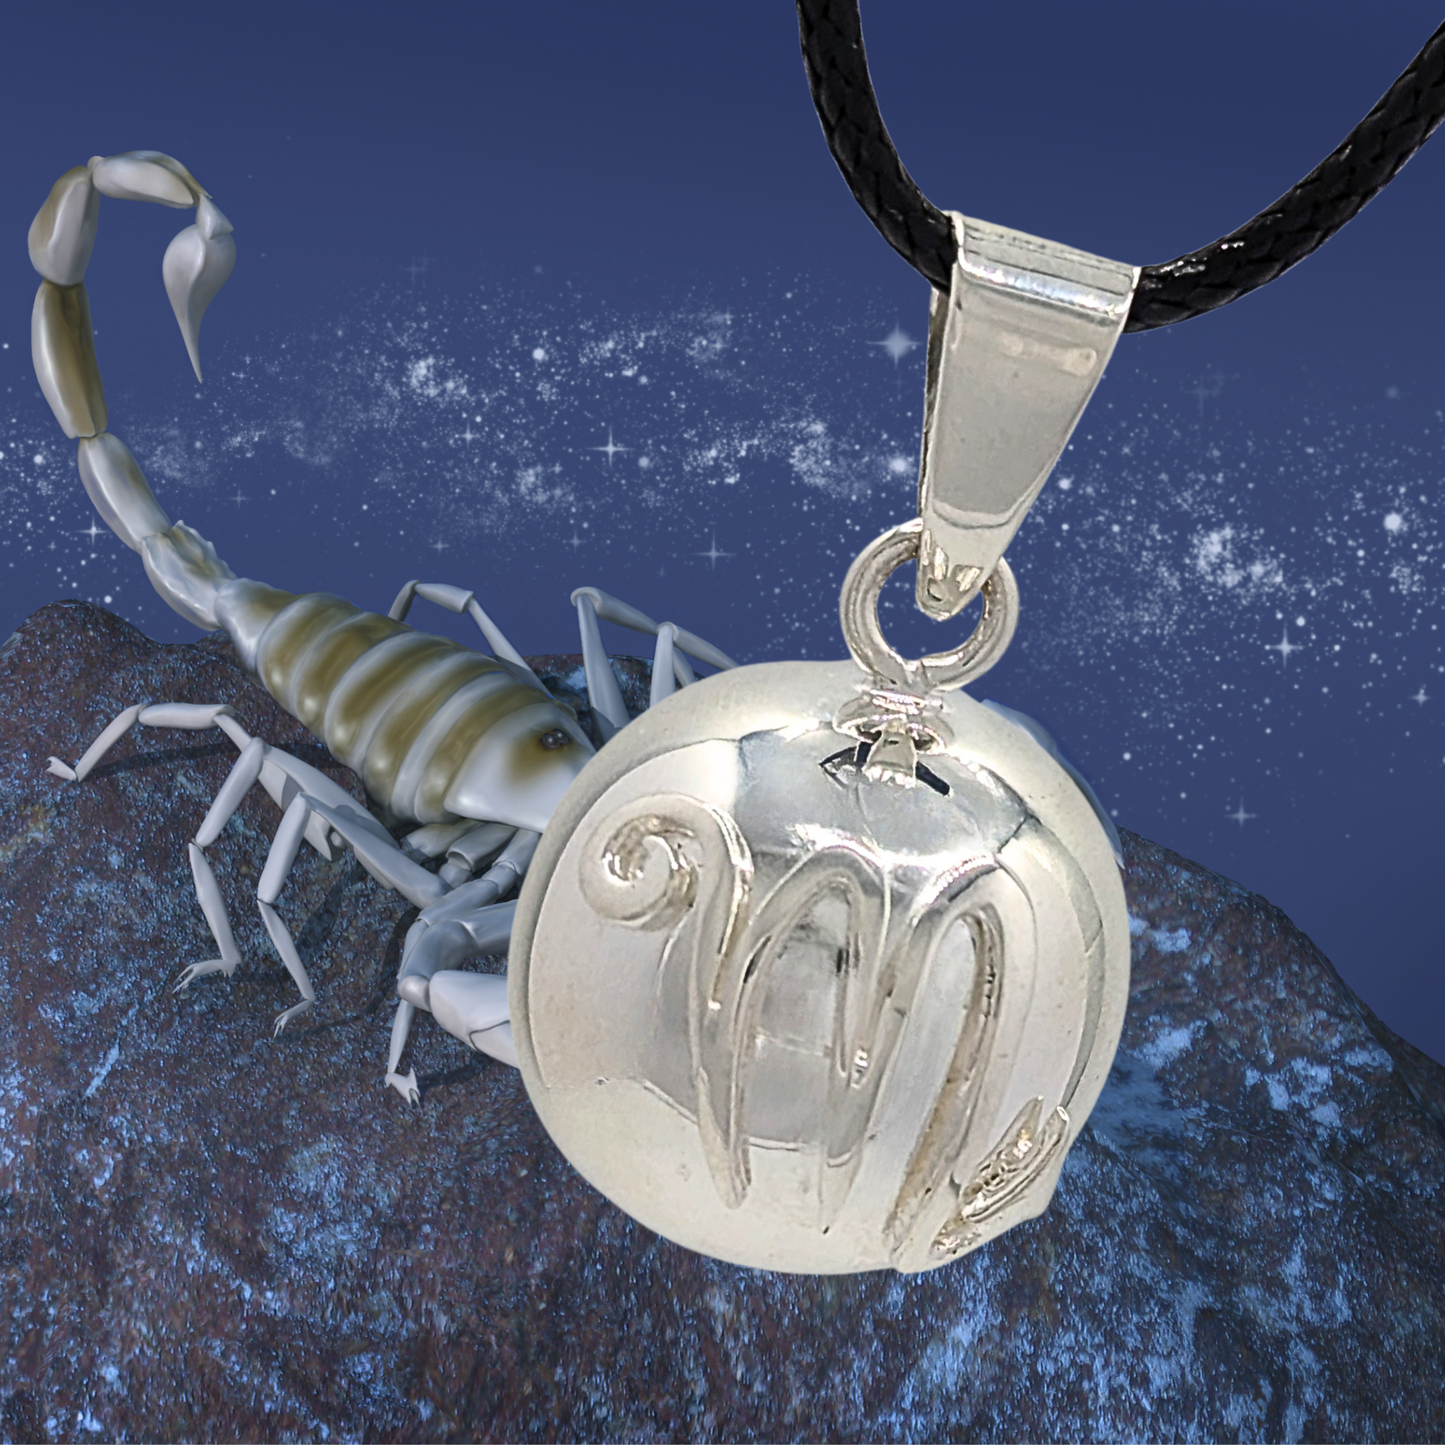 Scorpio Zodiac Chime Necklace